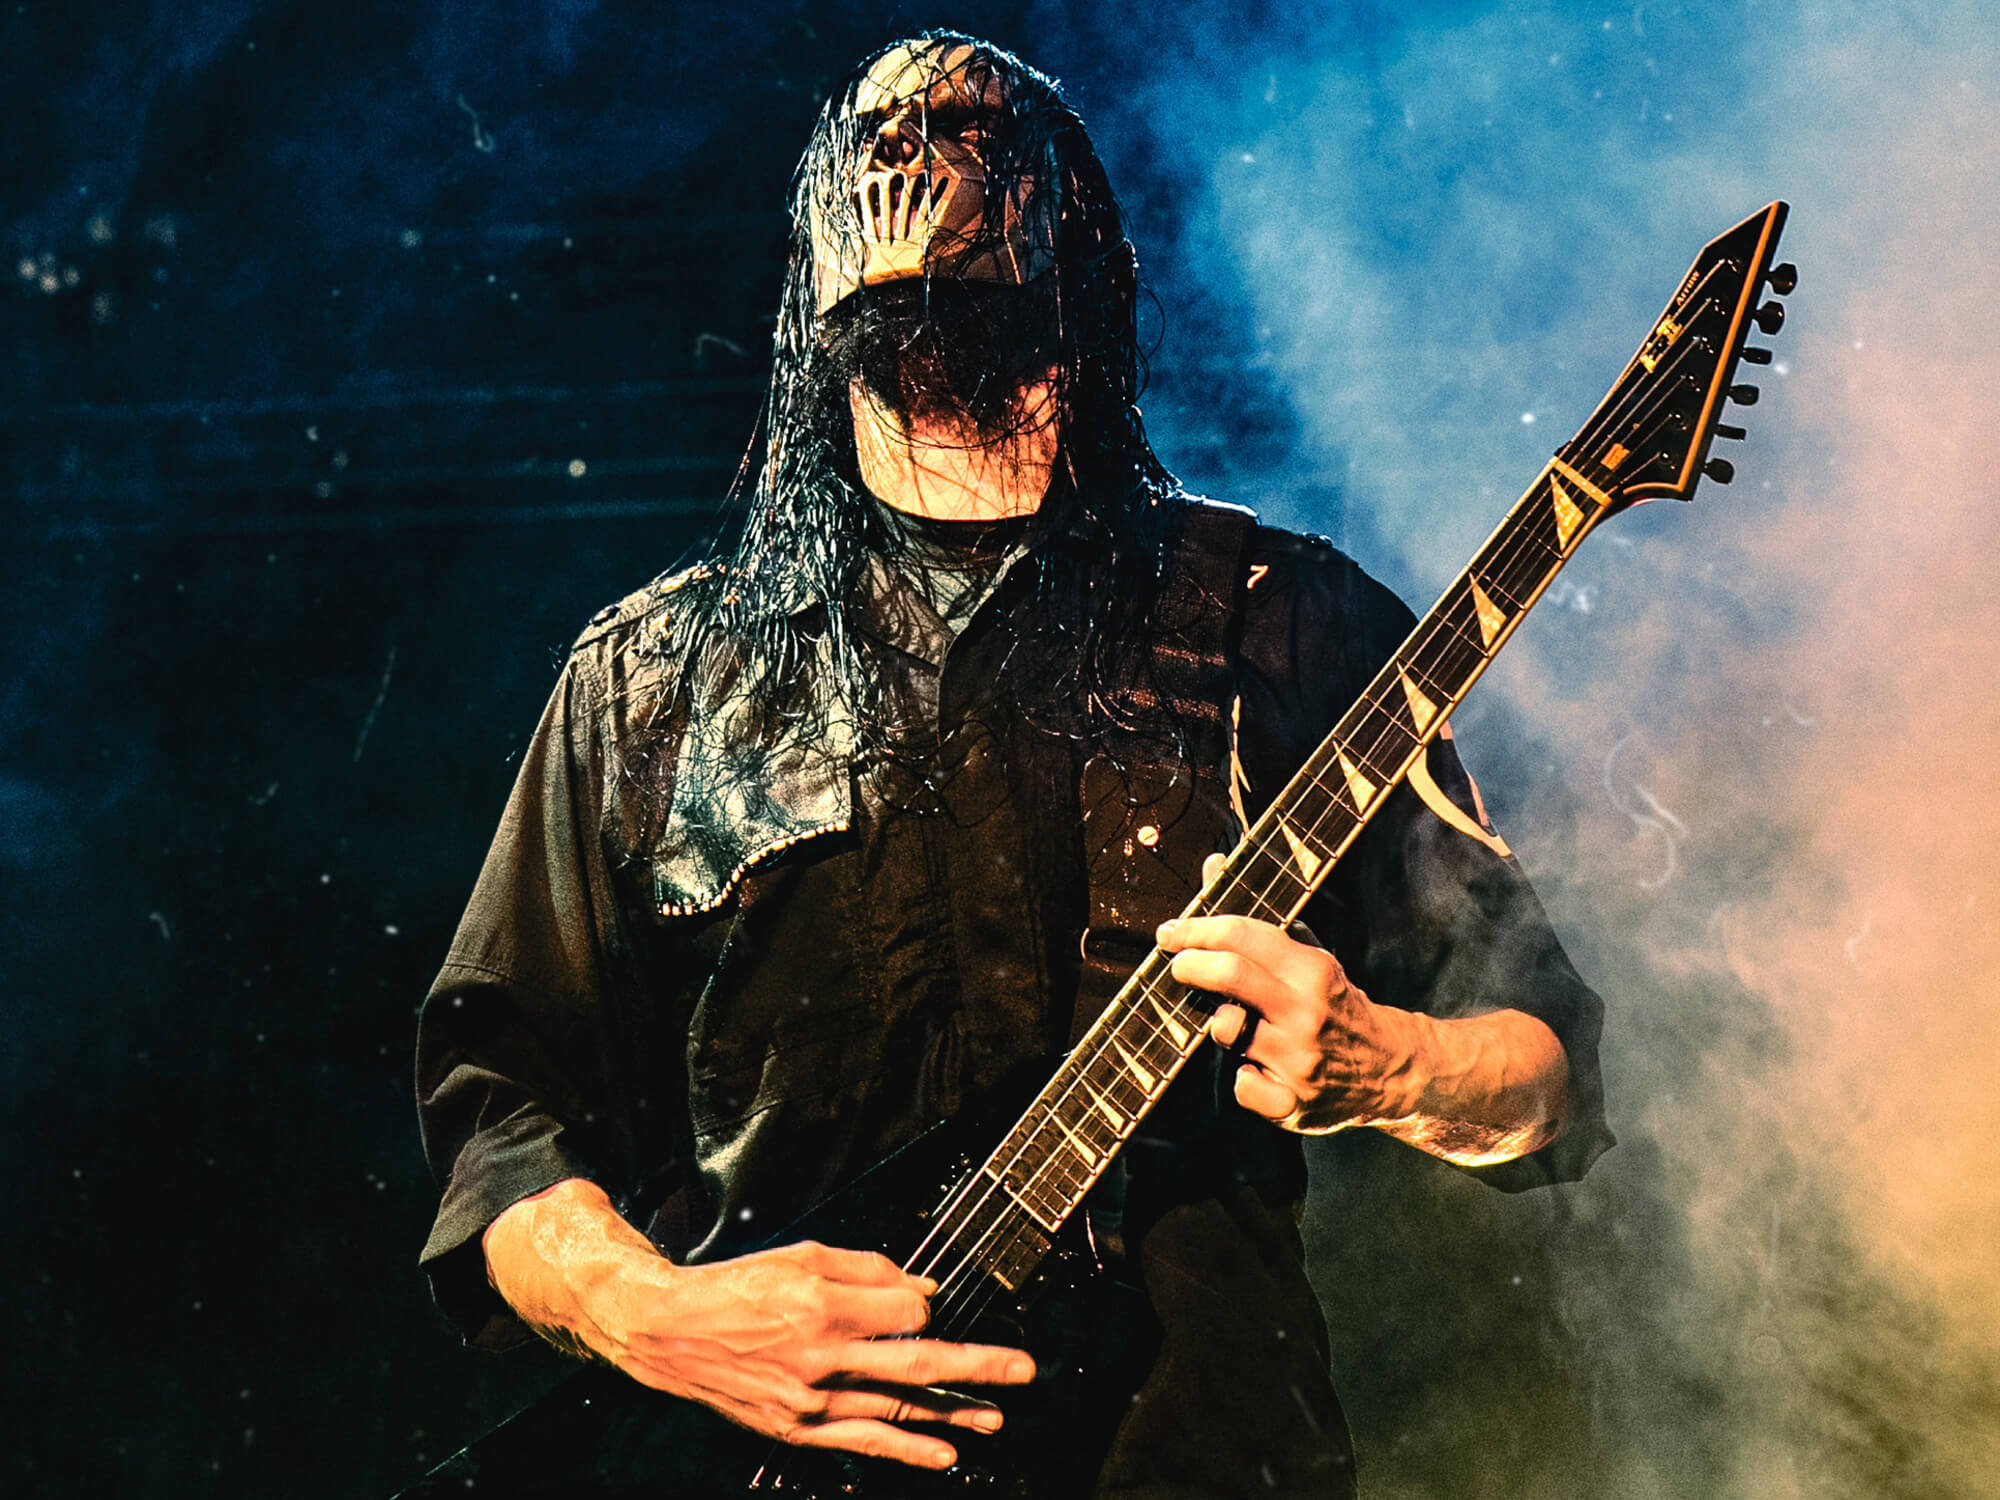 Mick Thomson of Slipknot